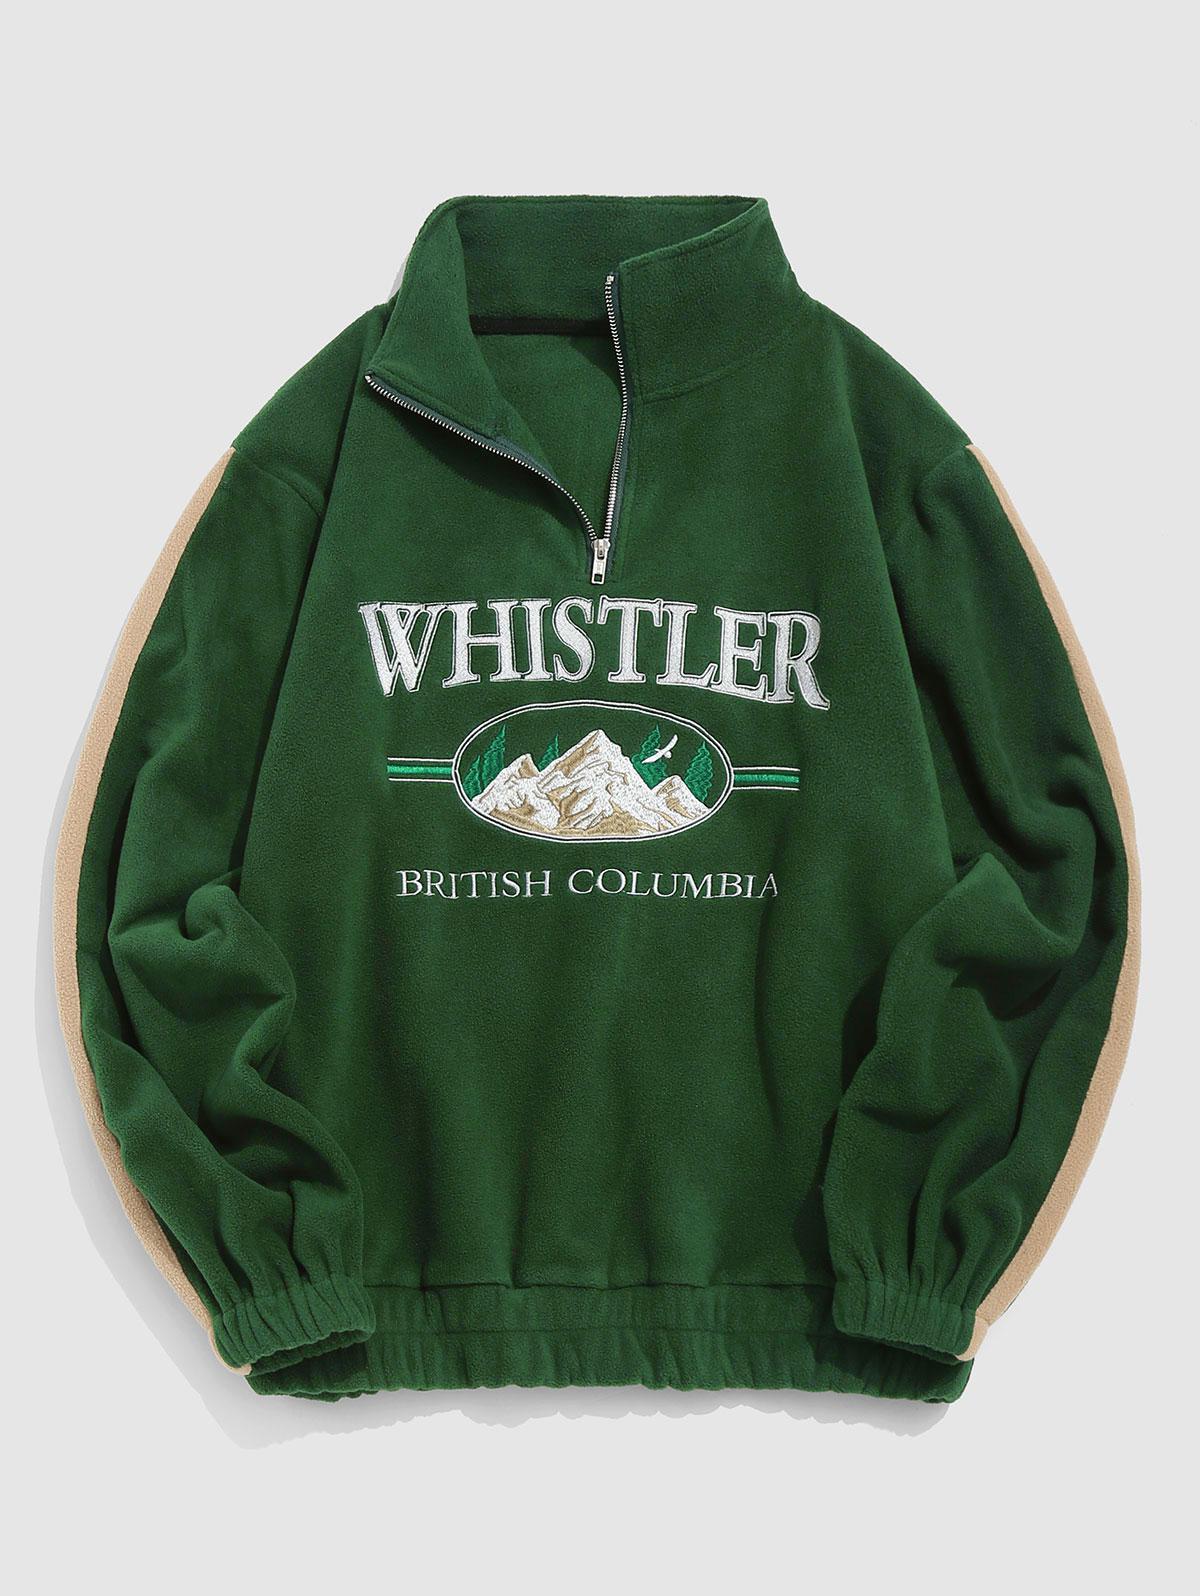 ZAFUL Men's Streetwear Letter Mountain Vintage Embroidery Polar Fleece Quarter Zip Sweatshirt L Deep green